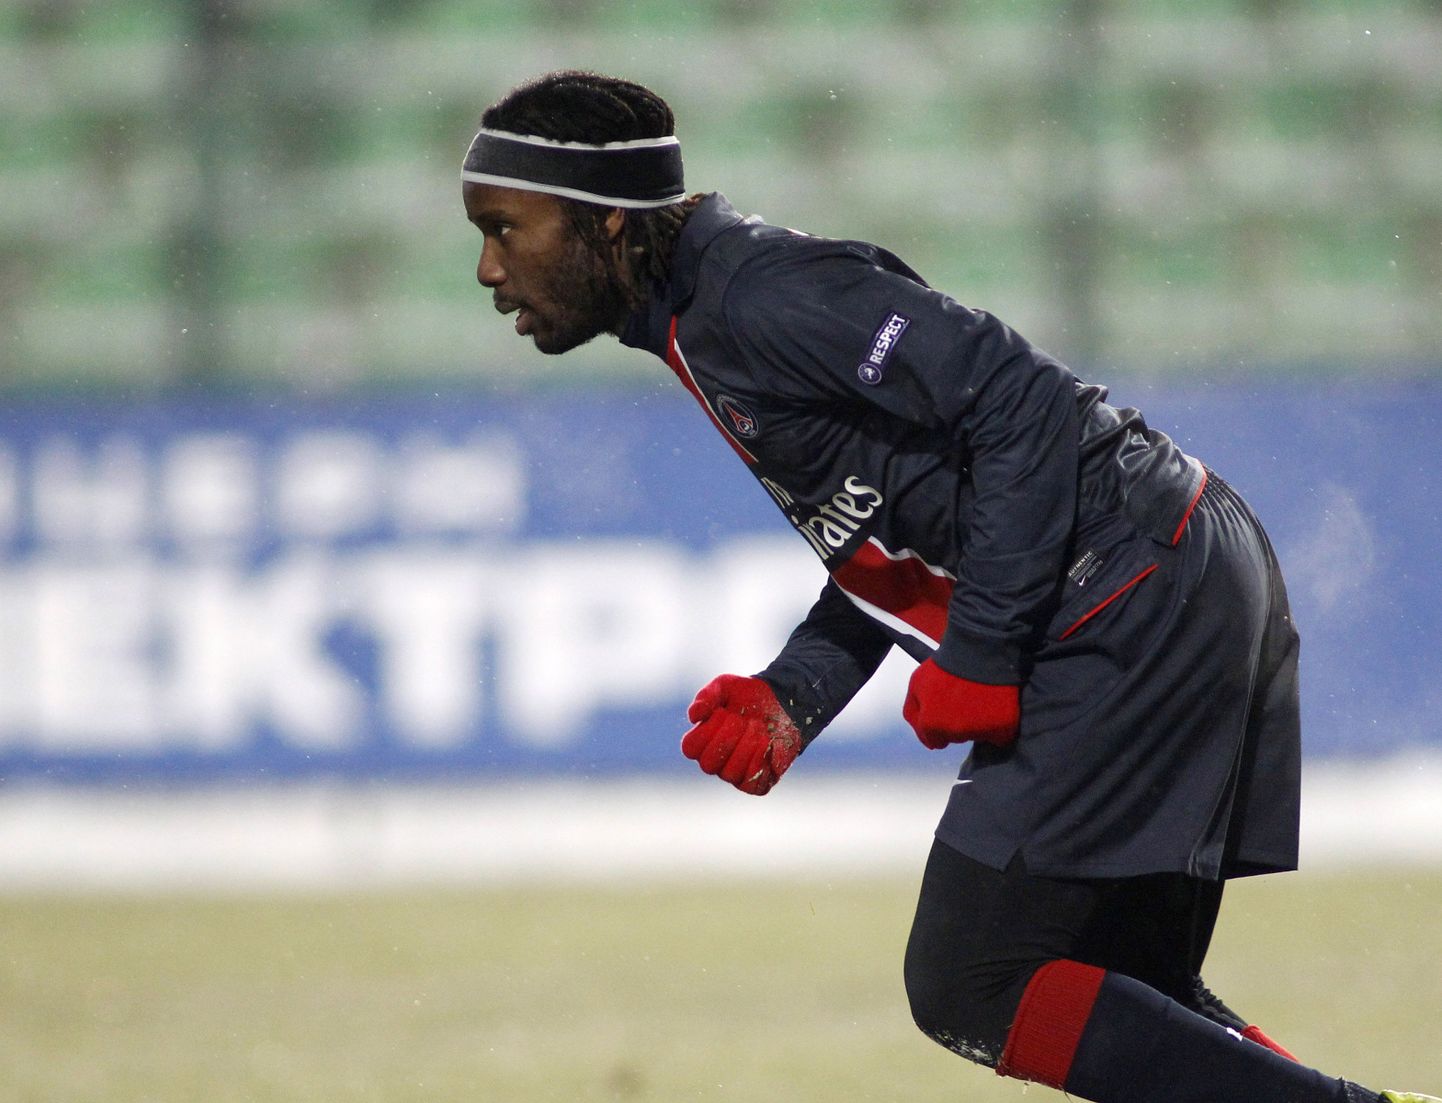 Paris Saint Germaini mängijal Peguy Luyindulal oli eilses mängus nii külm, et ta ei soovi enam kunagi Lvivis mängida.